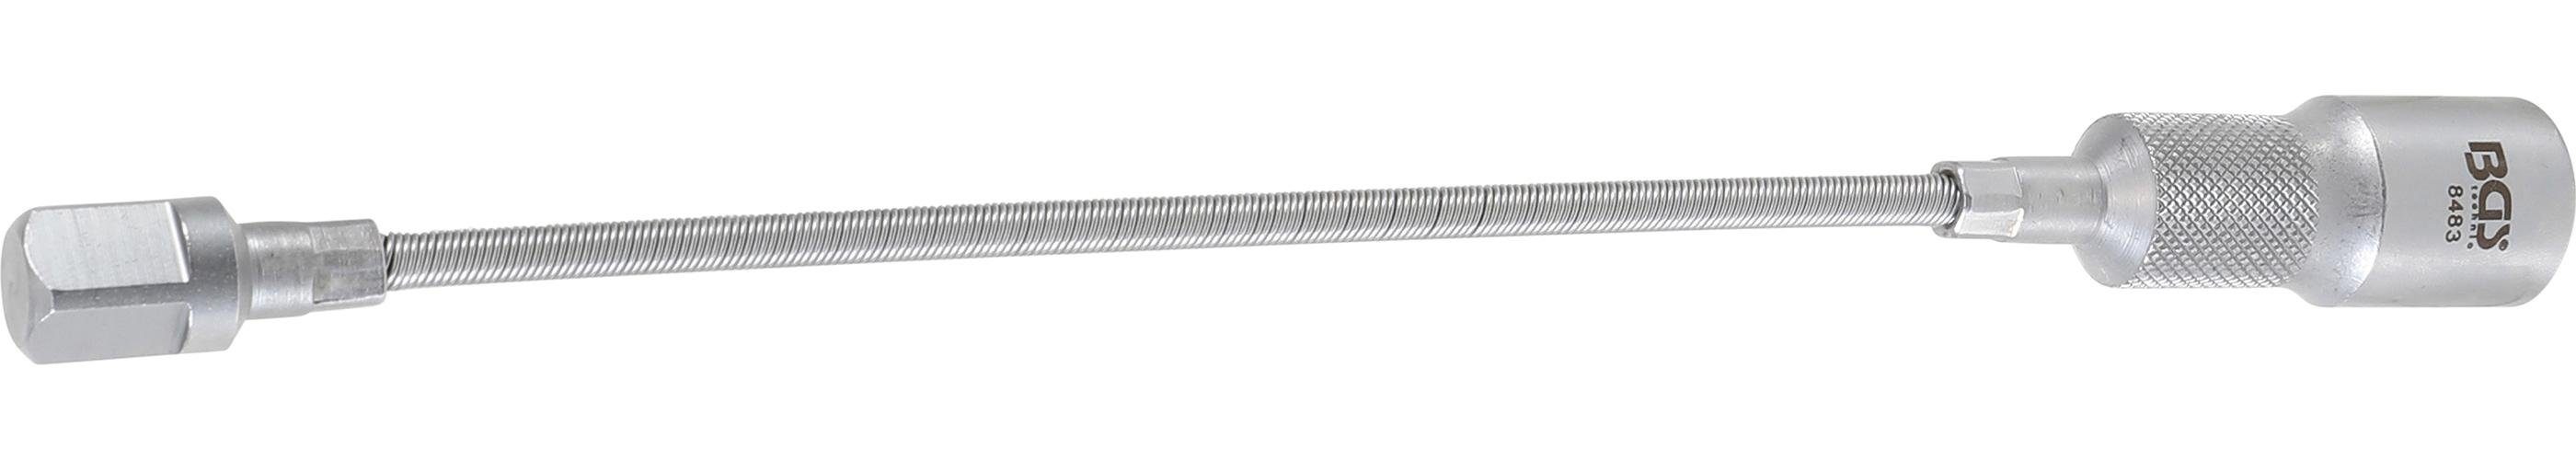 mm 300 Flexible 12,5 mm (1/2), technic Verlängerung, Außen-/Innenvierkant BGS Ratschenringschlüssel